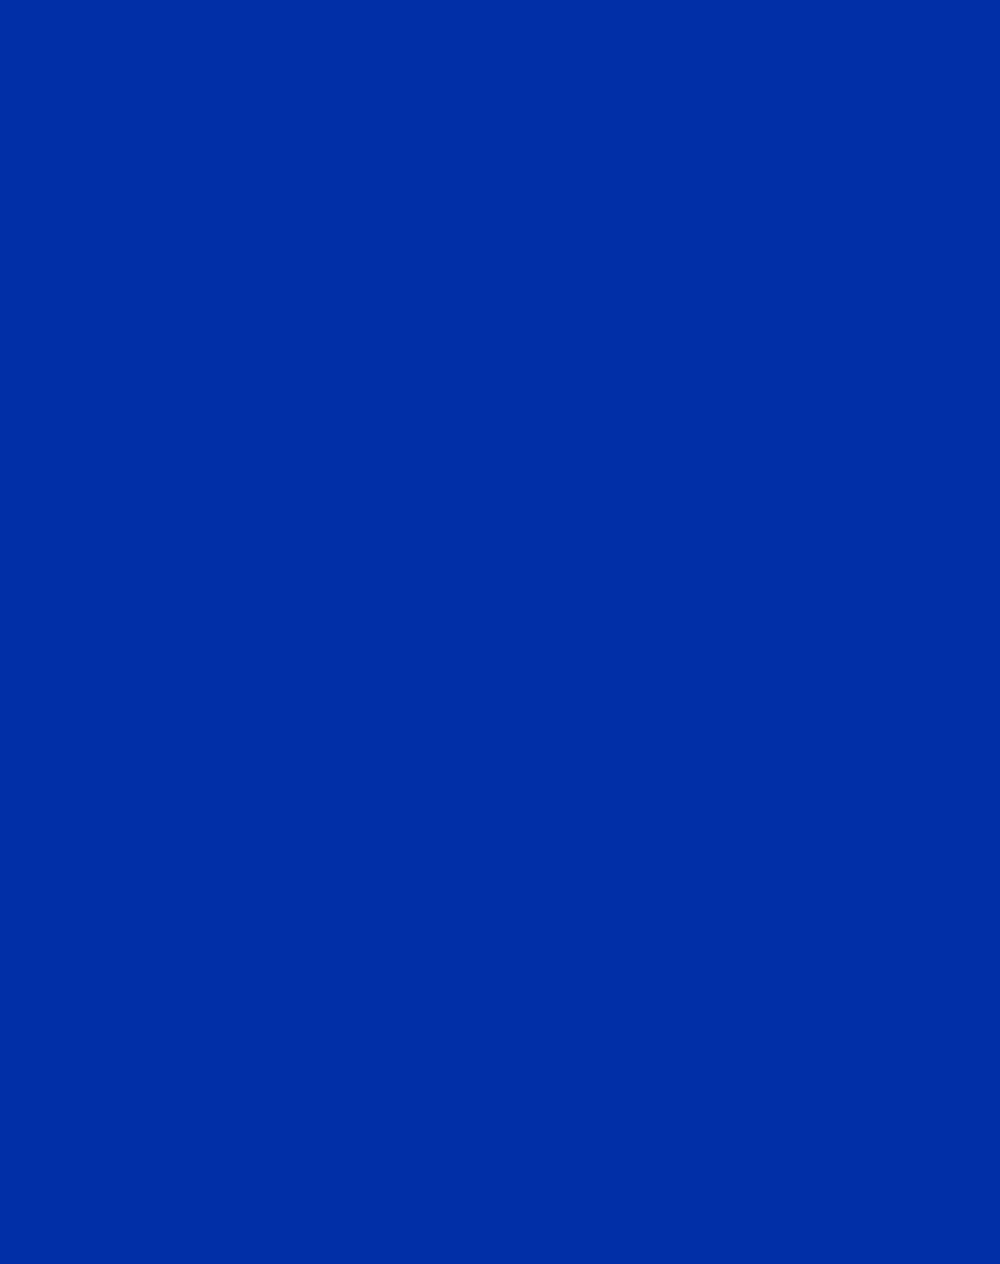 International Klein Blue color.